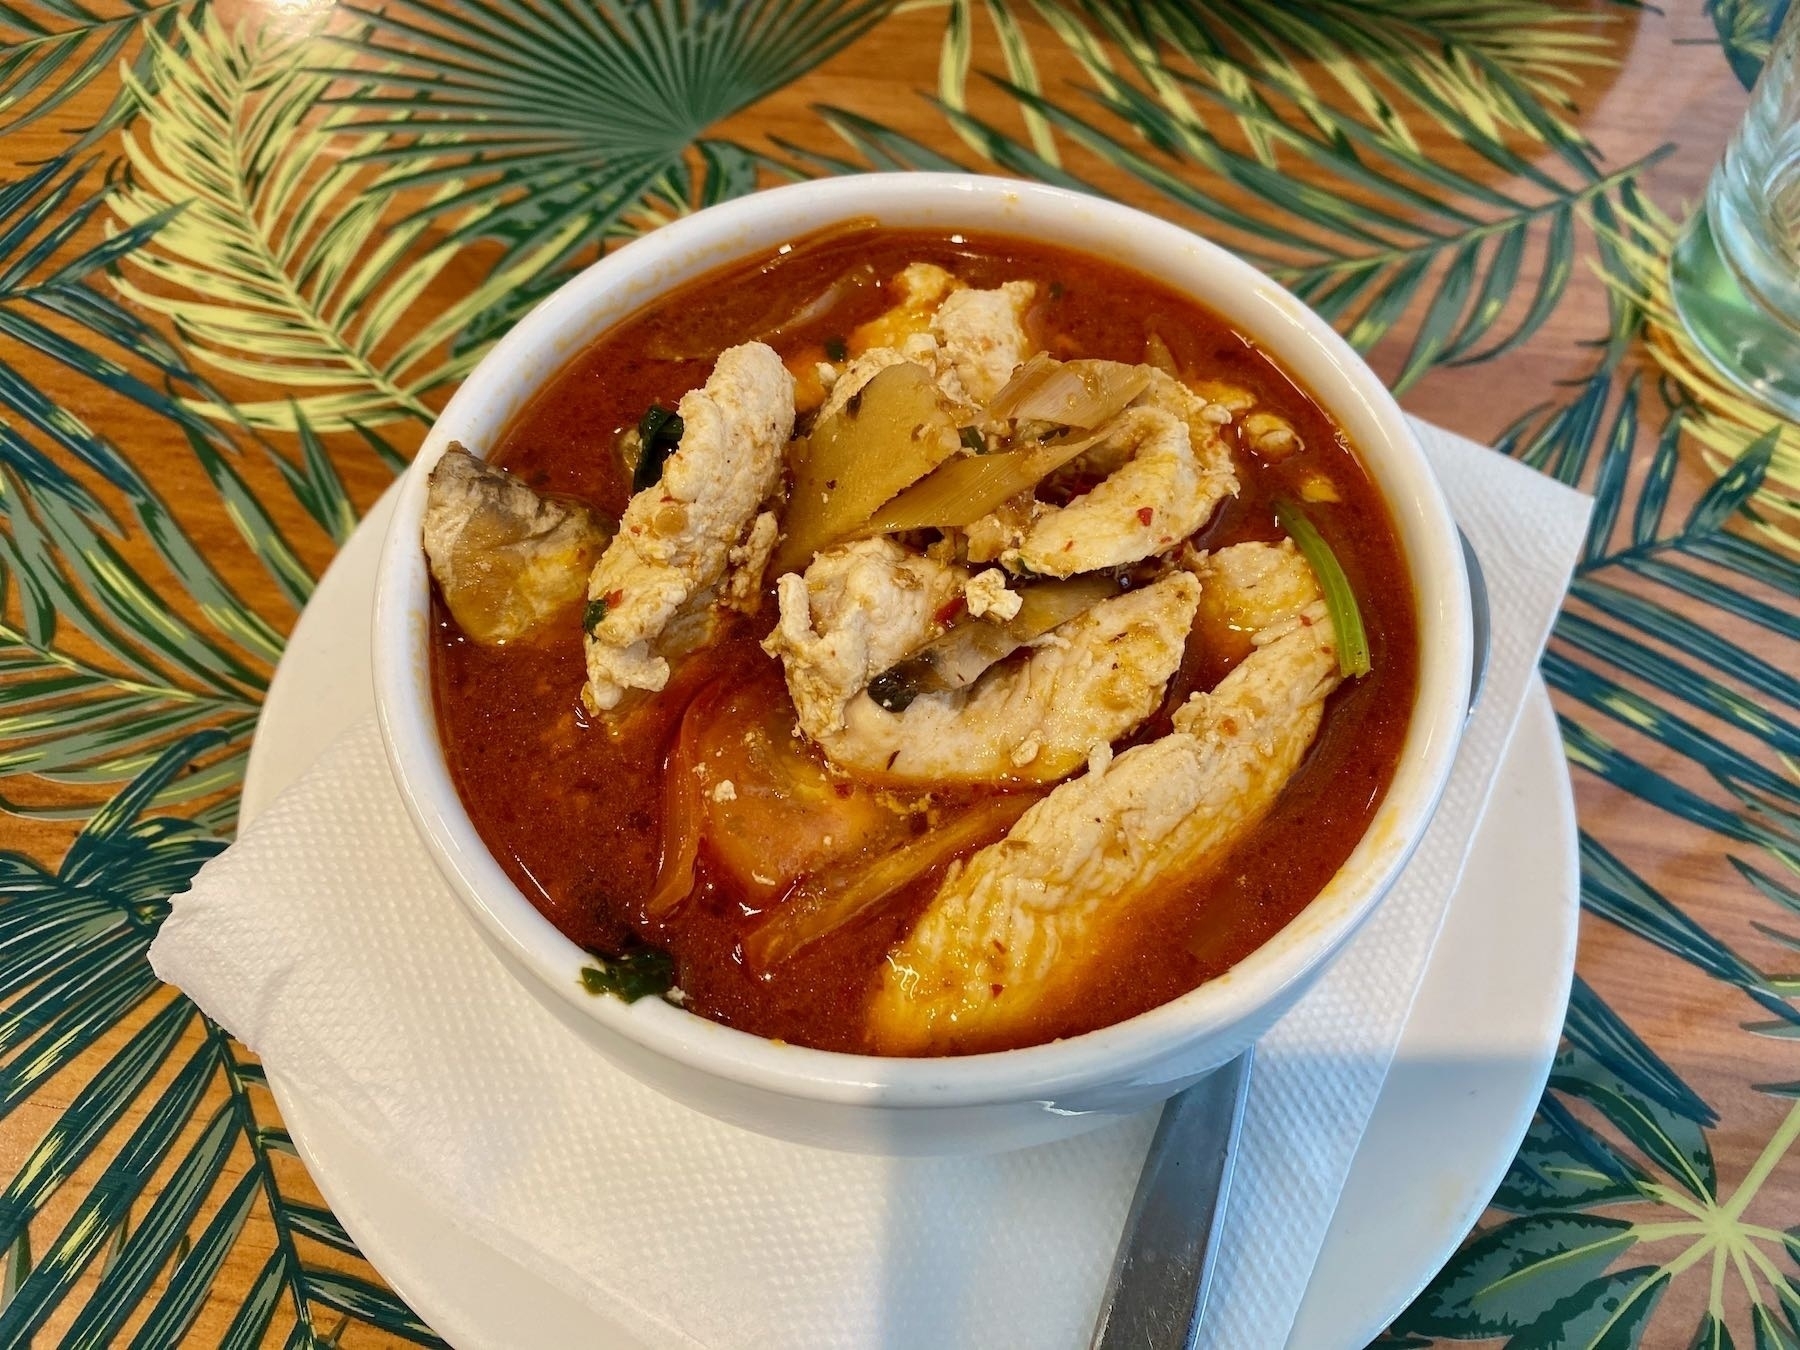 A bowl of Tom Kha Gai soup.